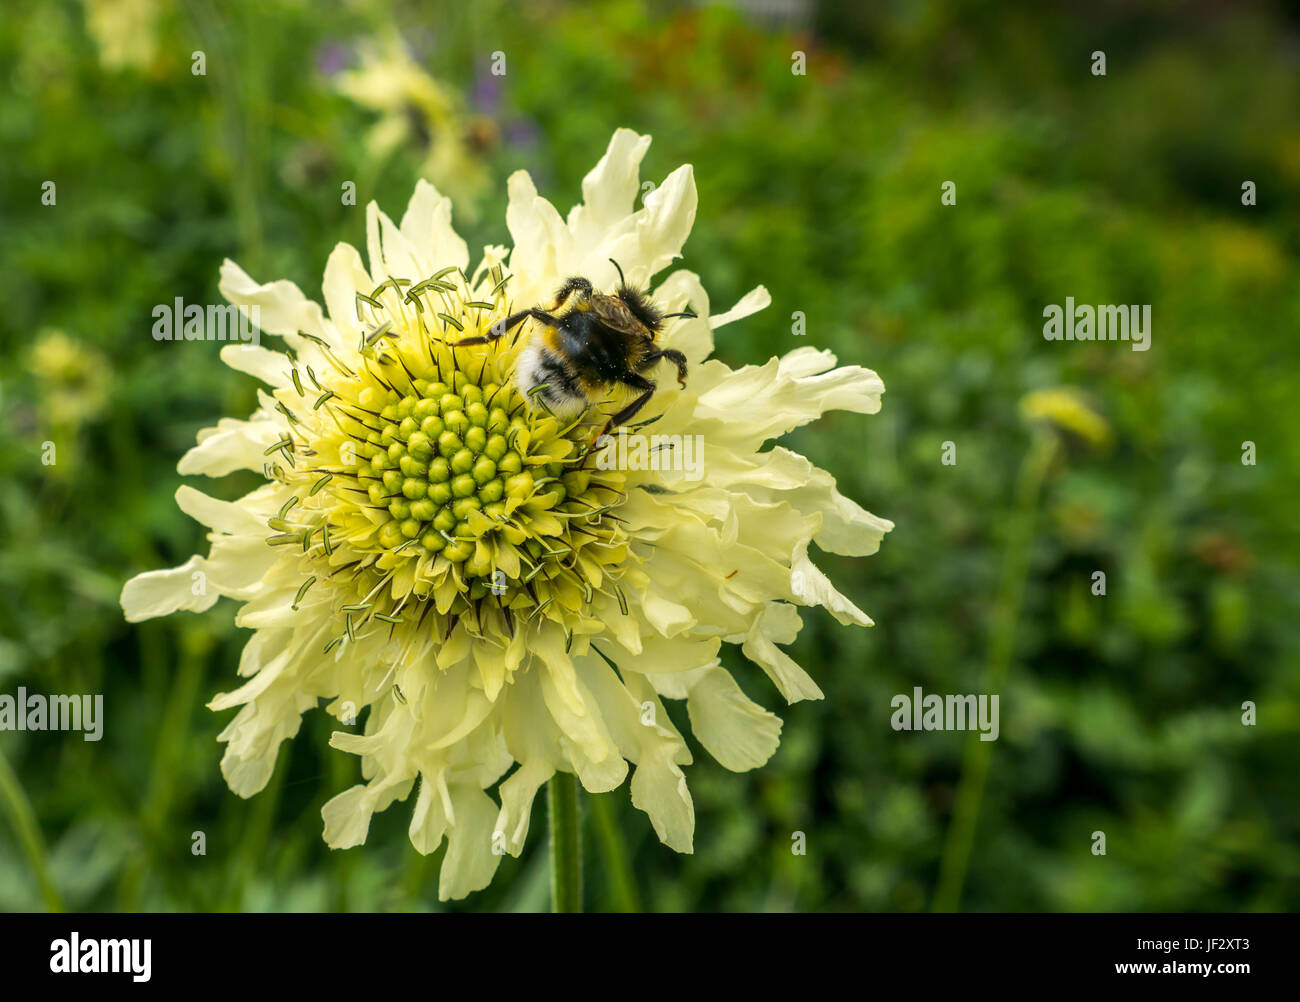 Riese scabious, Cephalaria gigantea, Blume mit Biene, Bombus sylvestris, Schottland, Großbritannien Stockfoto